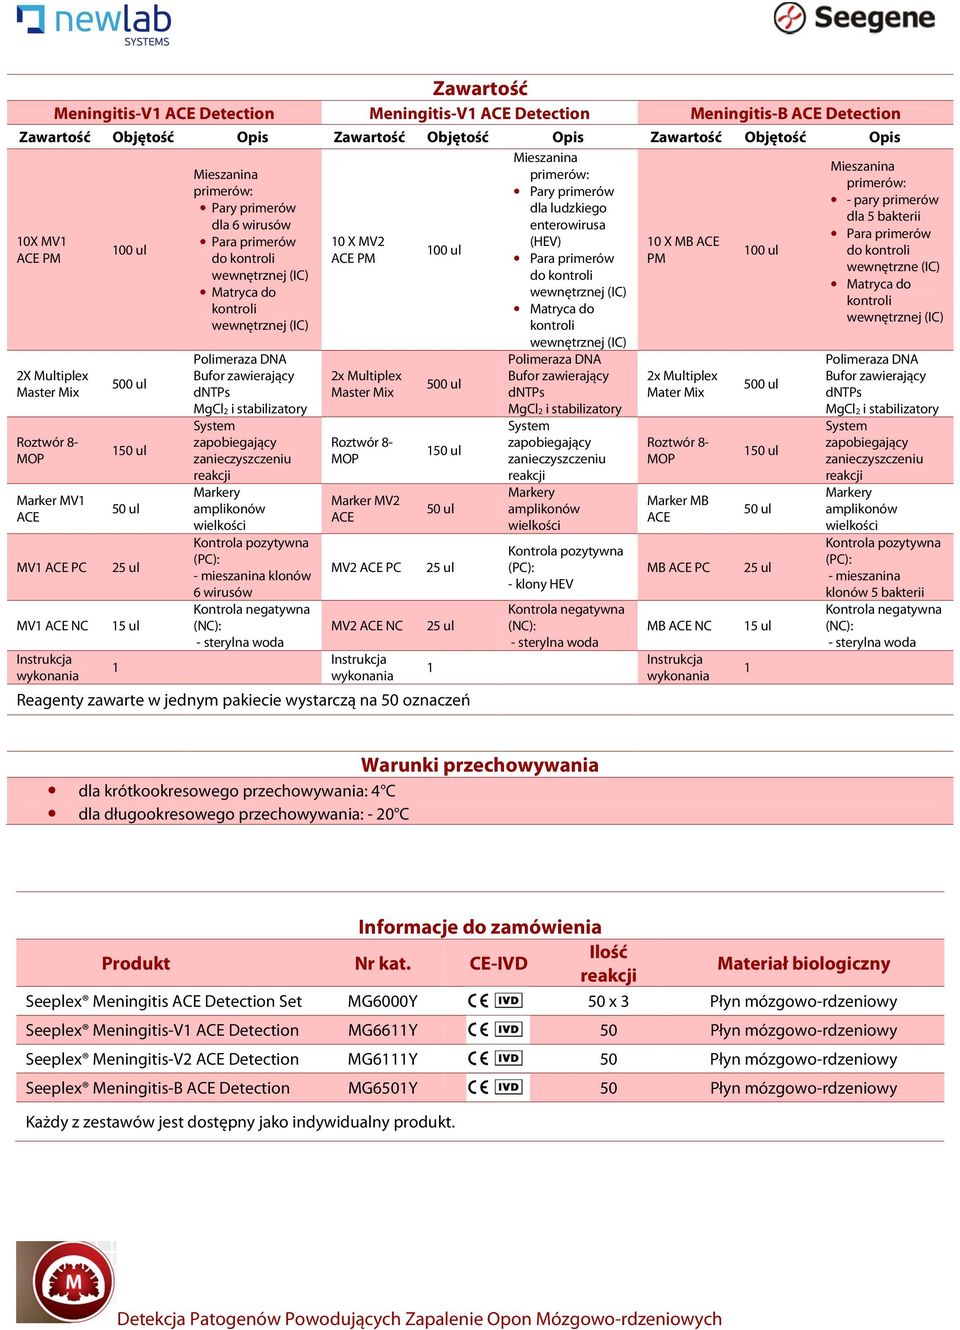 primerów dla ludzkiego enterowirusa (HEV) - klony HEV 0 X MB PM 2x Multiplex Mater Mix Marker MB MB PC MB NC 5 ul - pary primerów dla 5 bakterii wewnętrzne (IC) - mieszanina klonów 5 bakterii Warunki